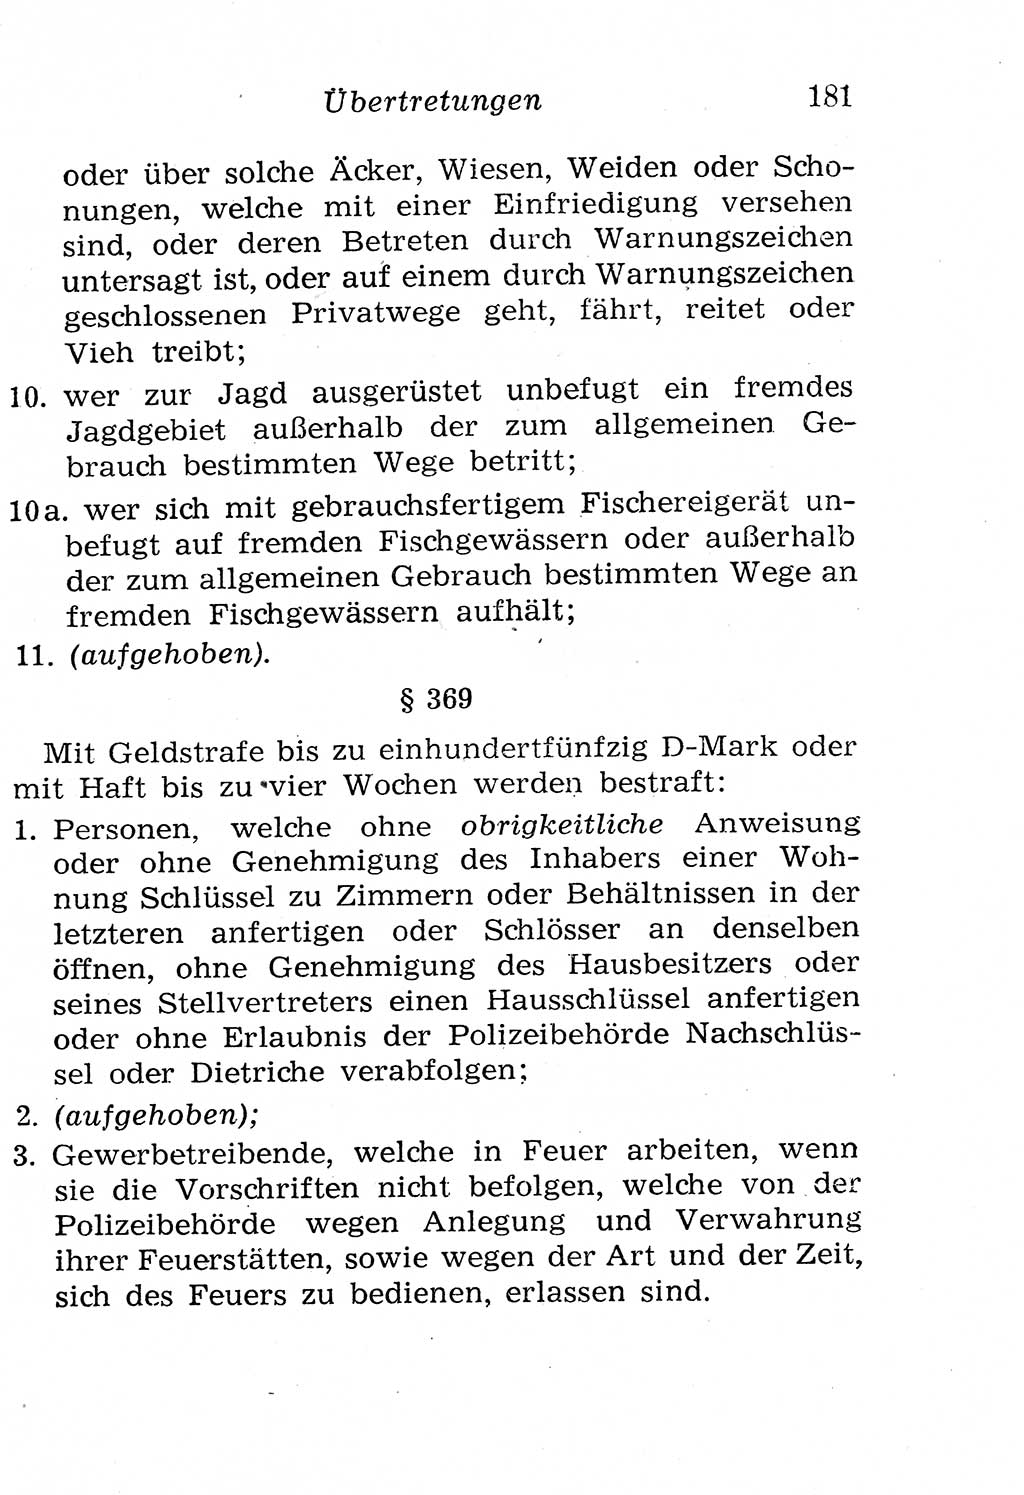 Strafgesetzbuch (StGB) und andere Strafgesetze [Deutsche Demokratische Republik (DDR)] 1958, Seite 181 (StGB Strafges. DDR 1958, S. 181)